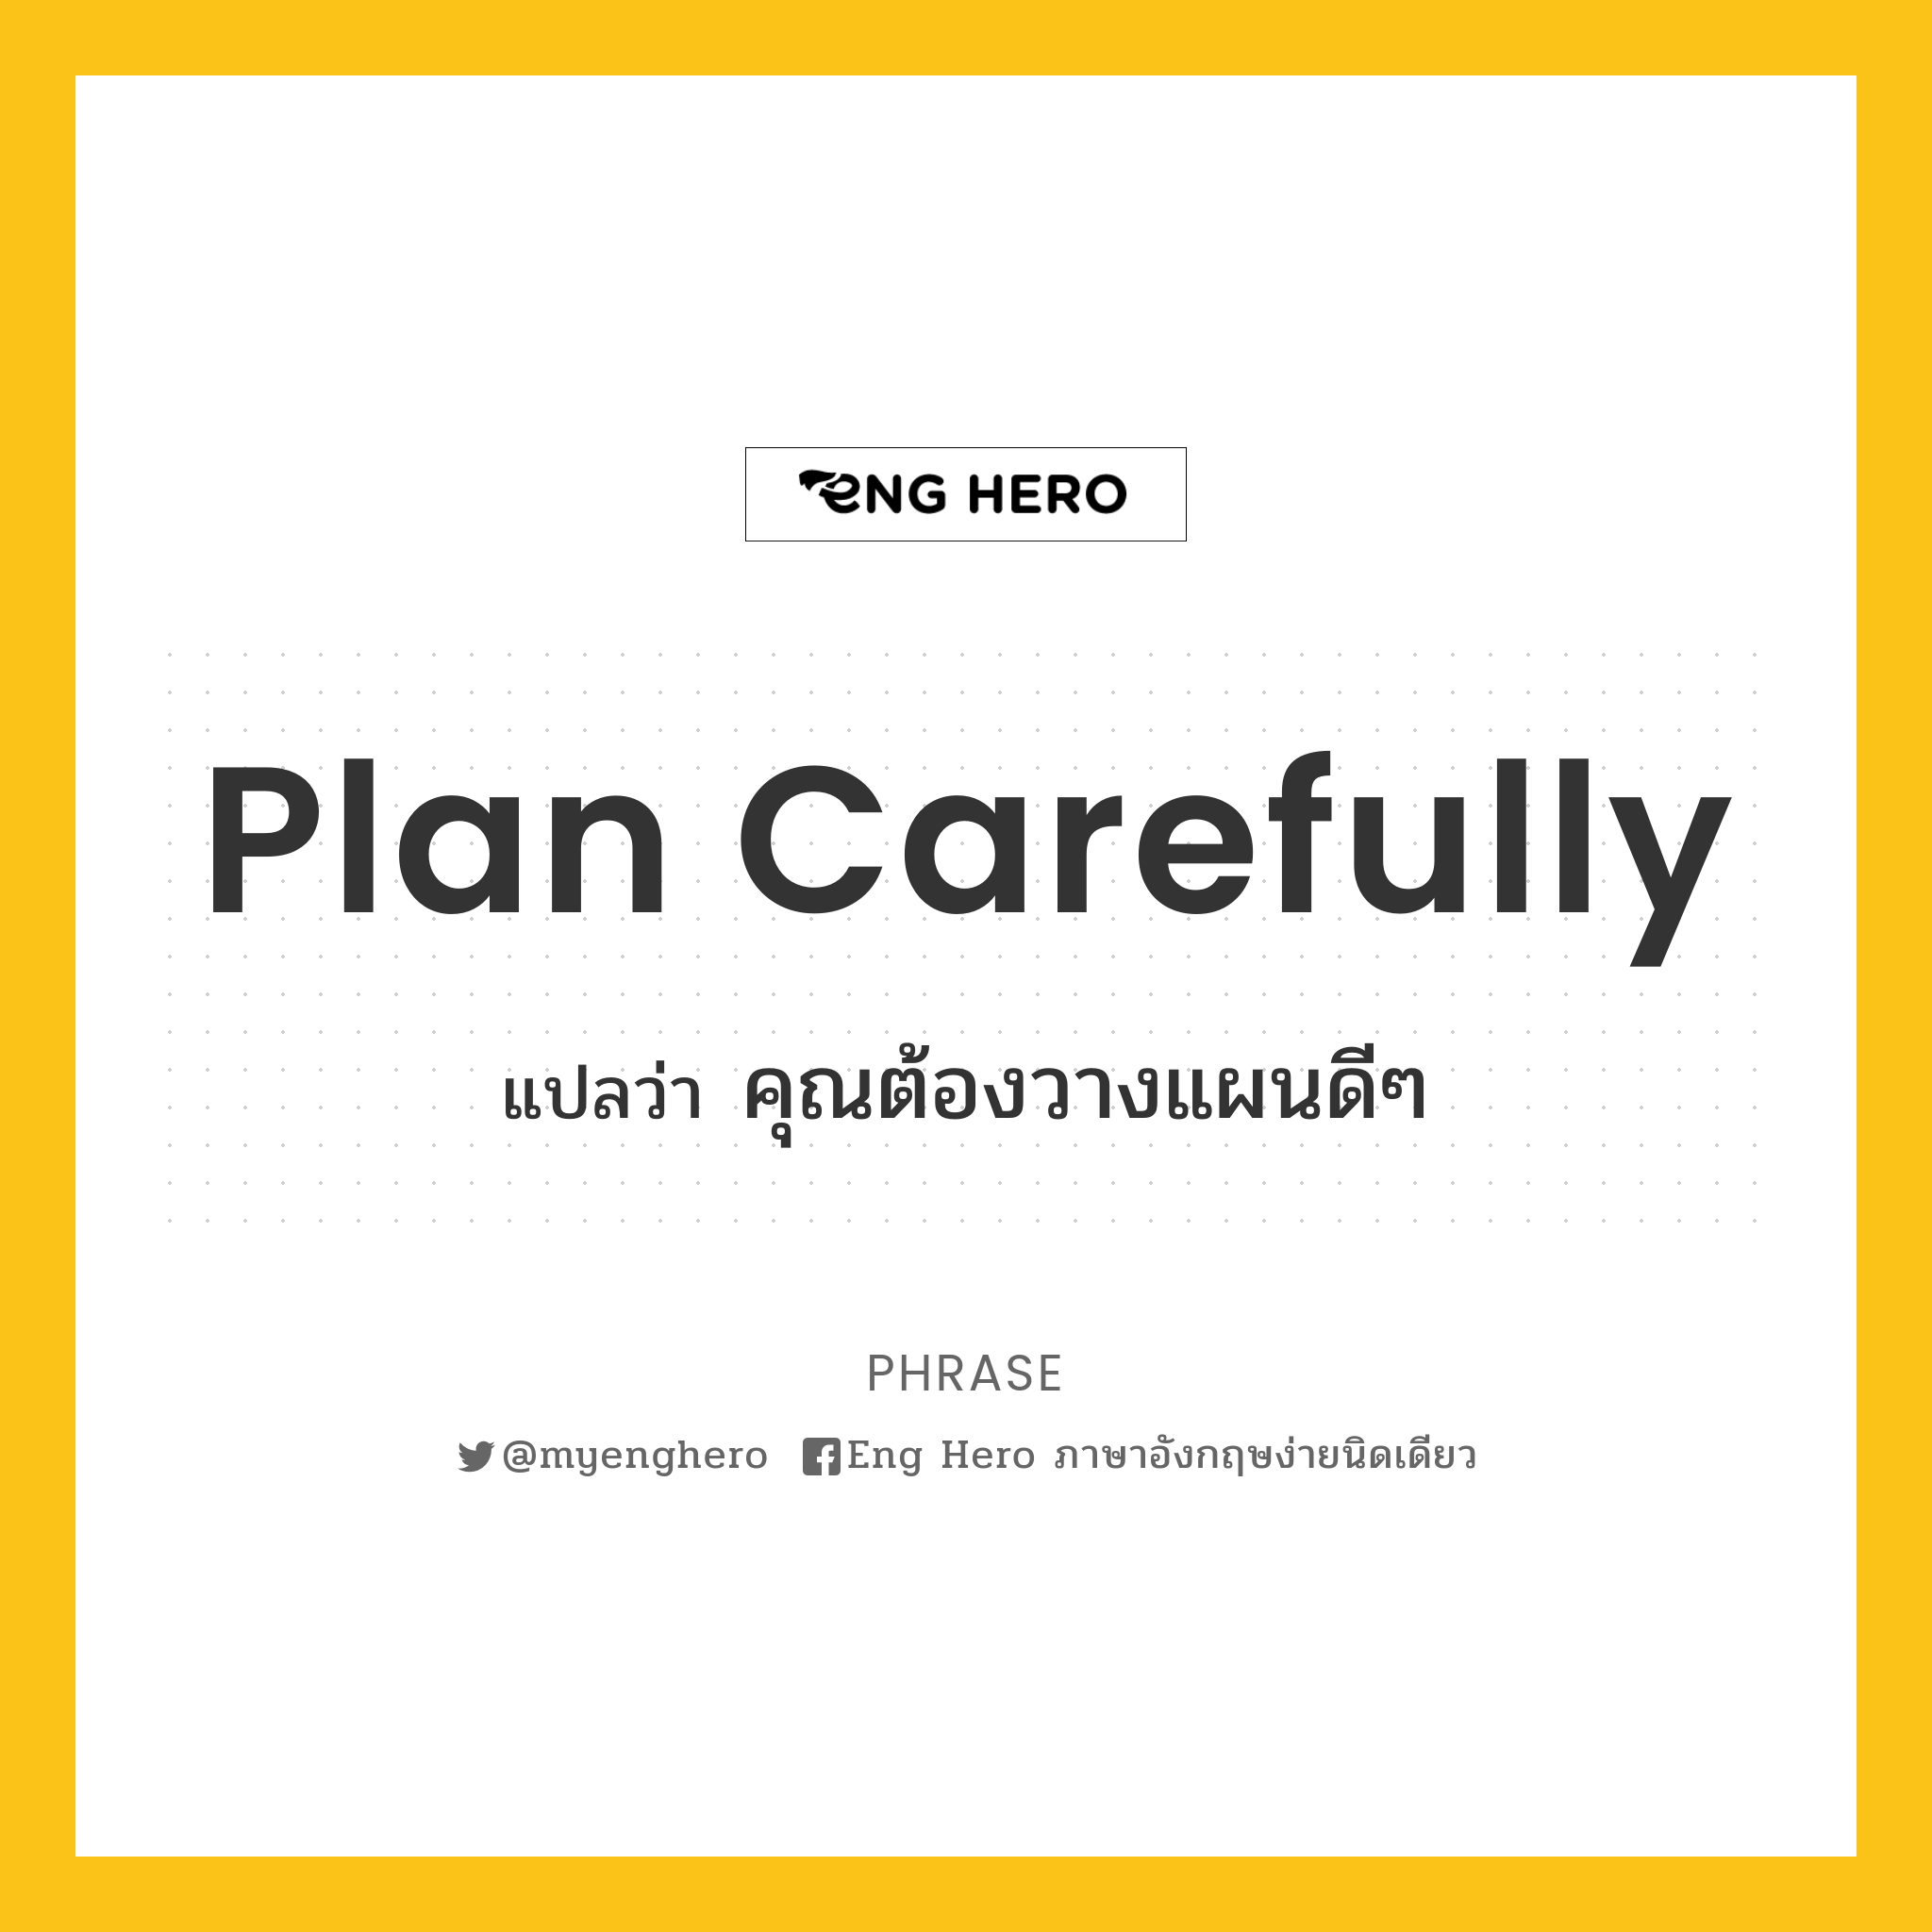 Plan carefully